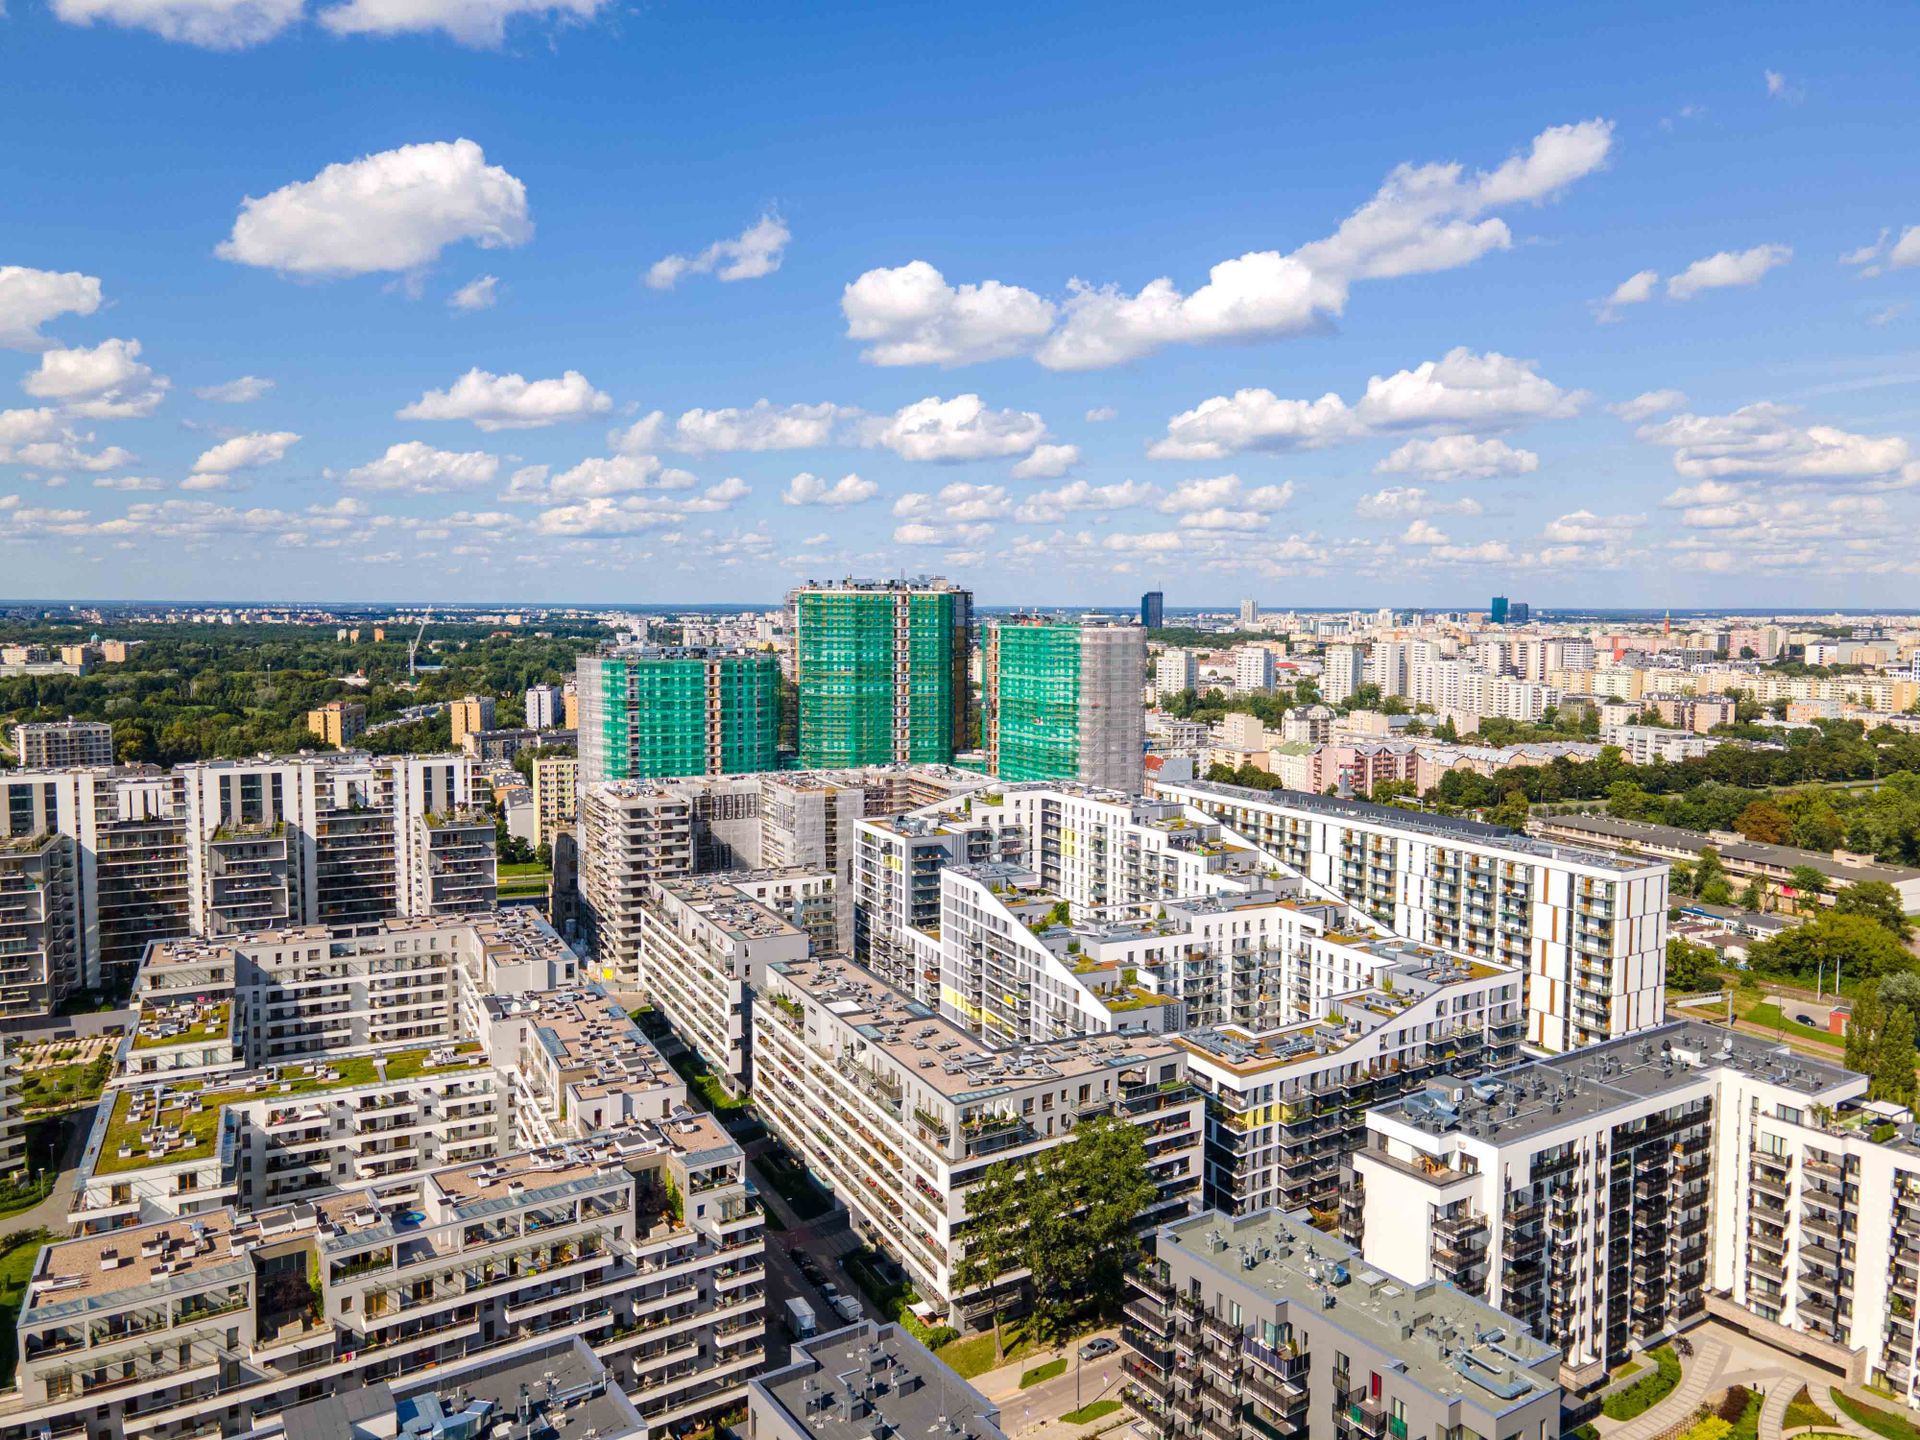 Ceny mieszkań w Polsce wzrosły średnio o 15% w ciągu 12 miesięcy